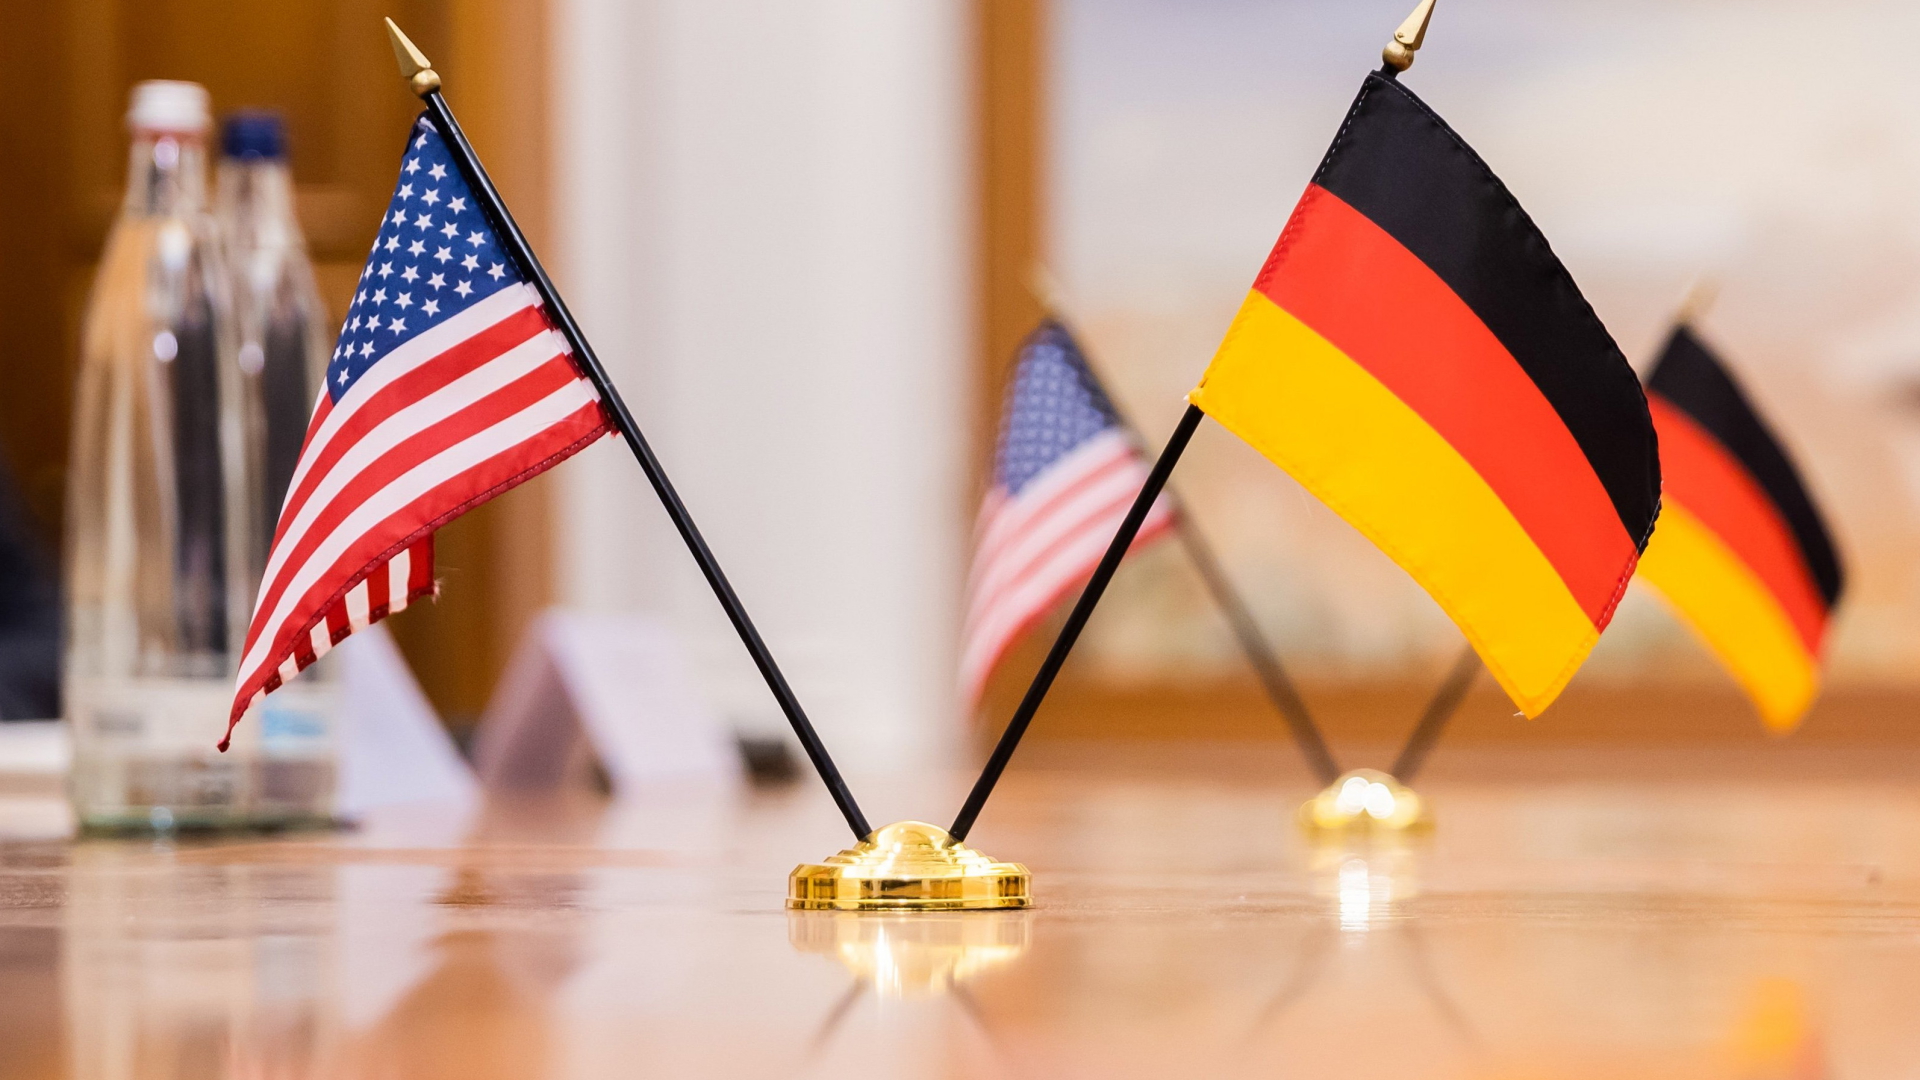 Die Flaggen der USA und Deutschland stehen auf einem Tisch.